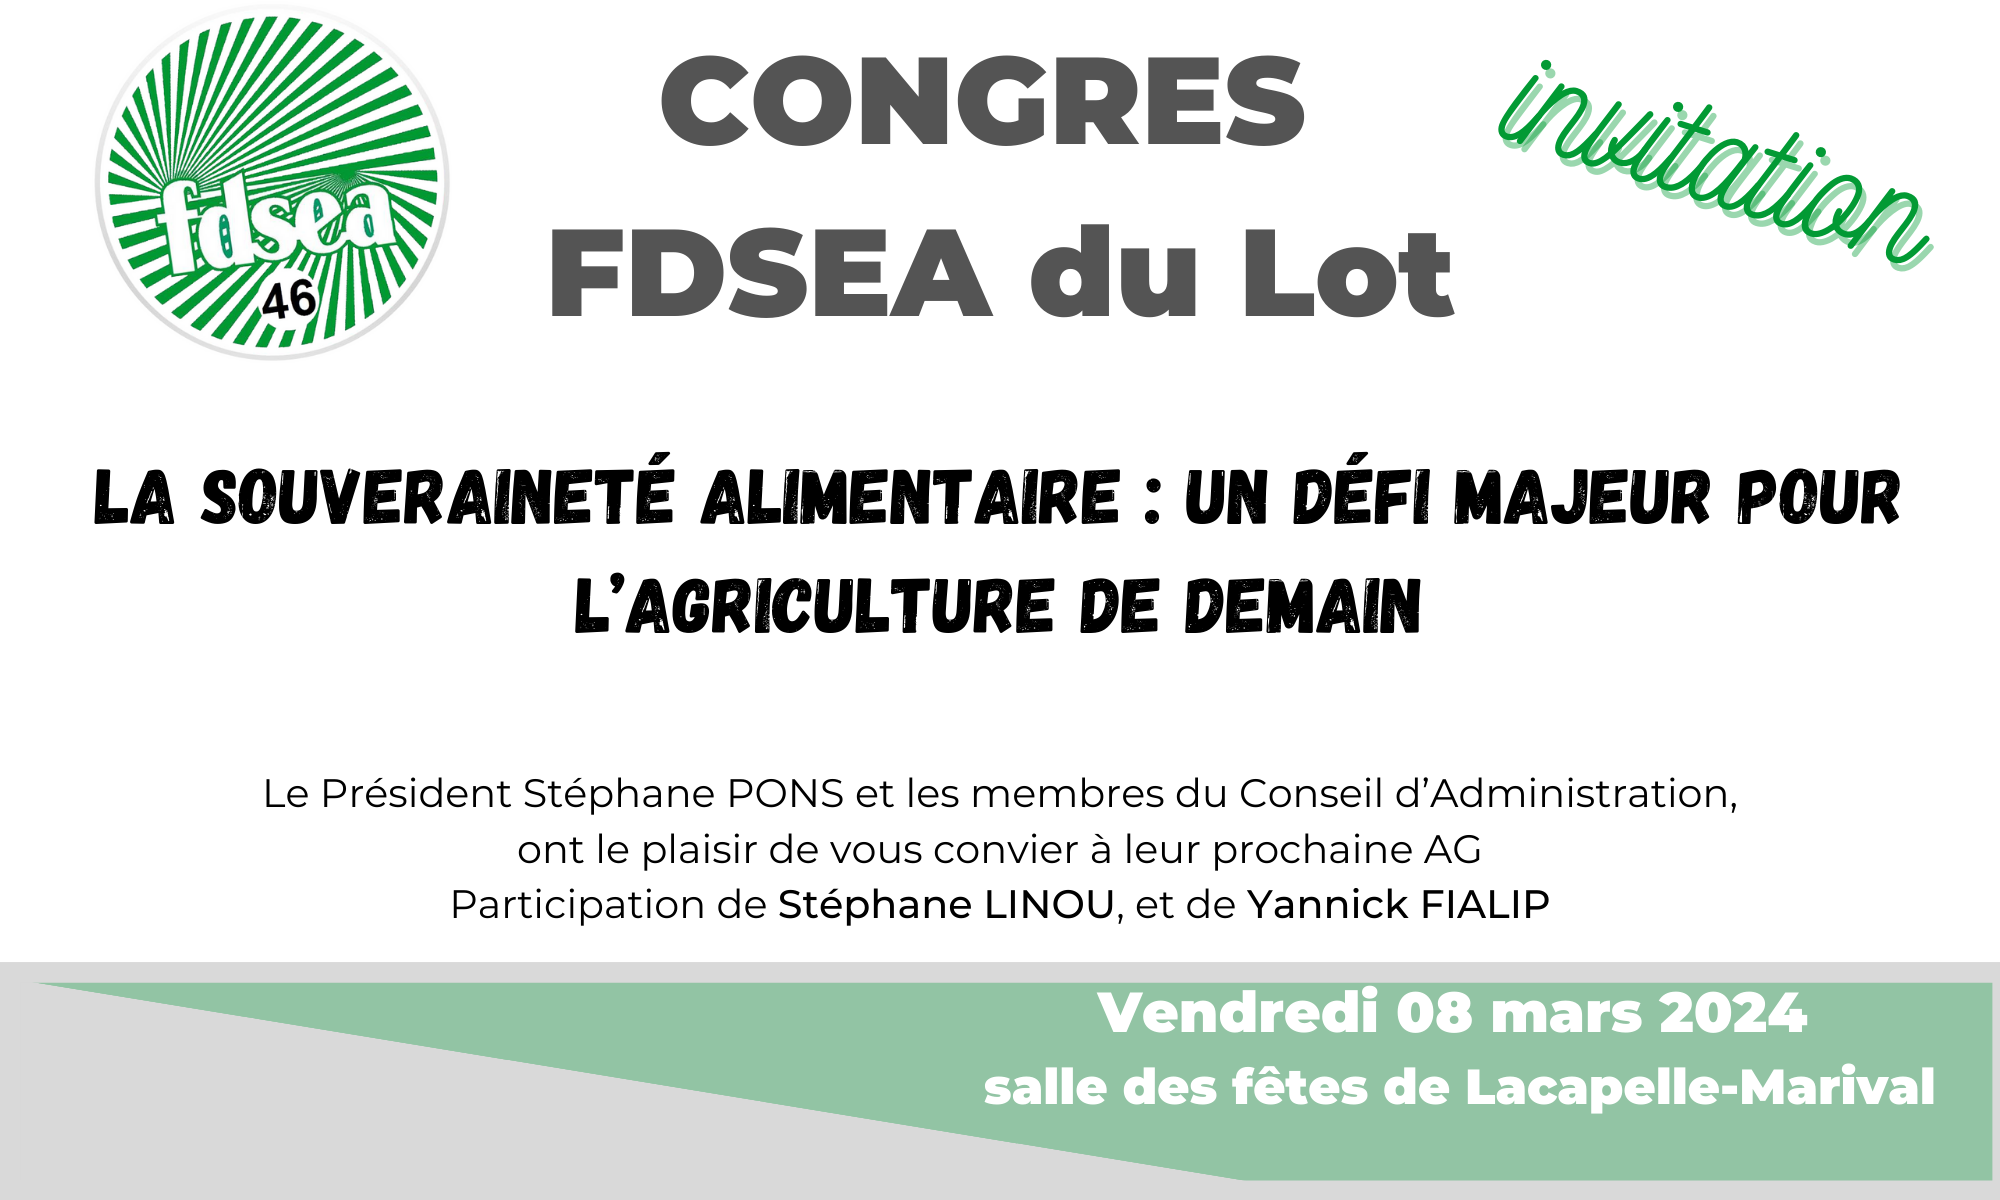 Congres FDSEA du Lot le 8 mars à Lacapelle-Marival